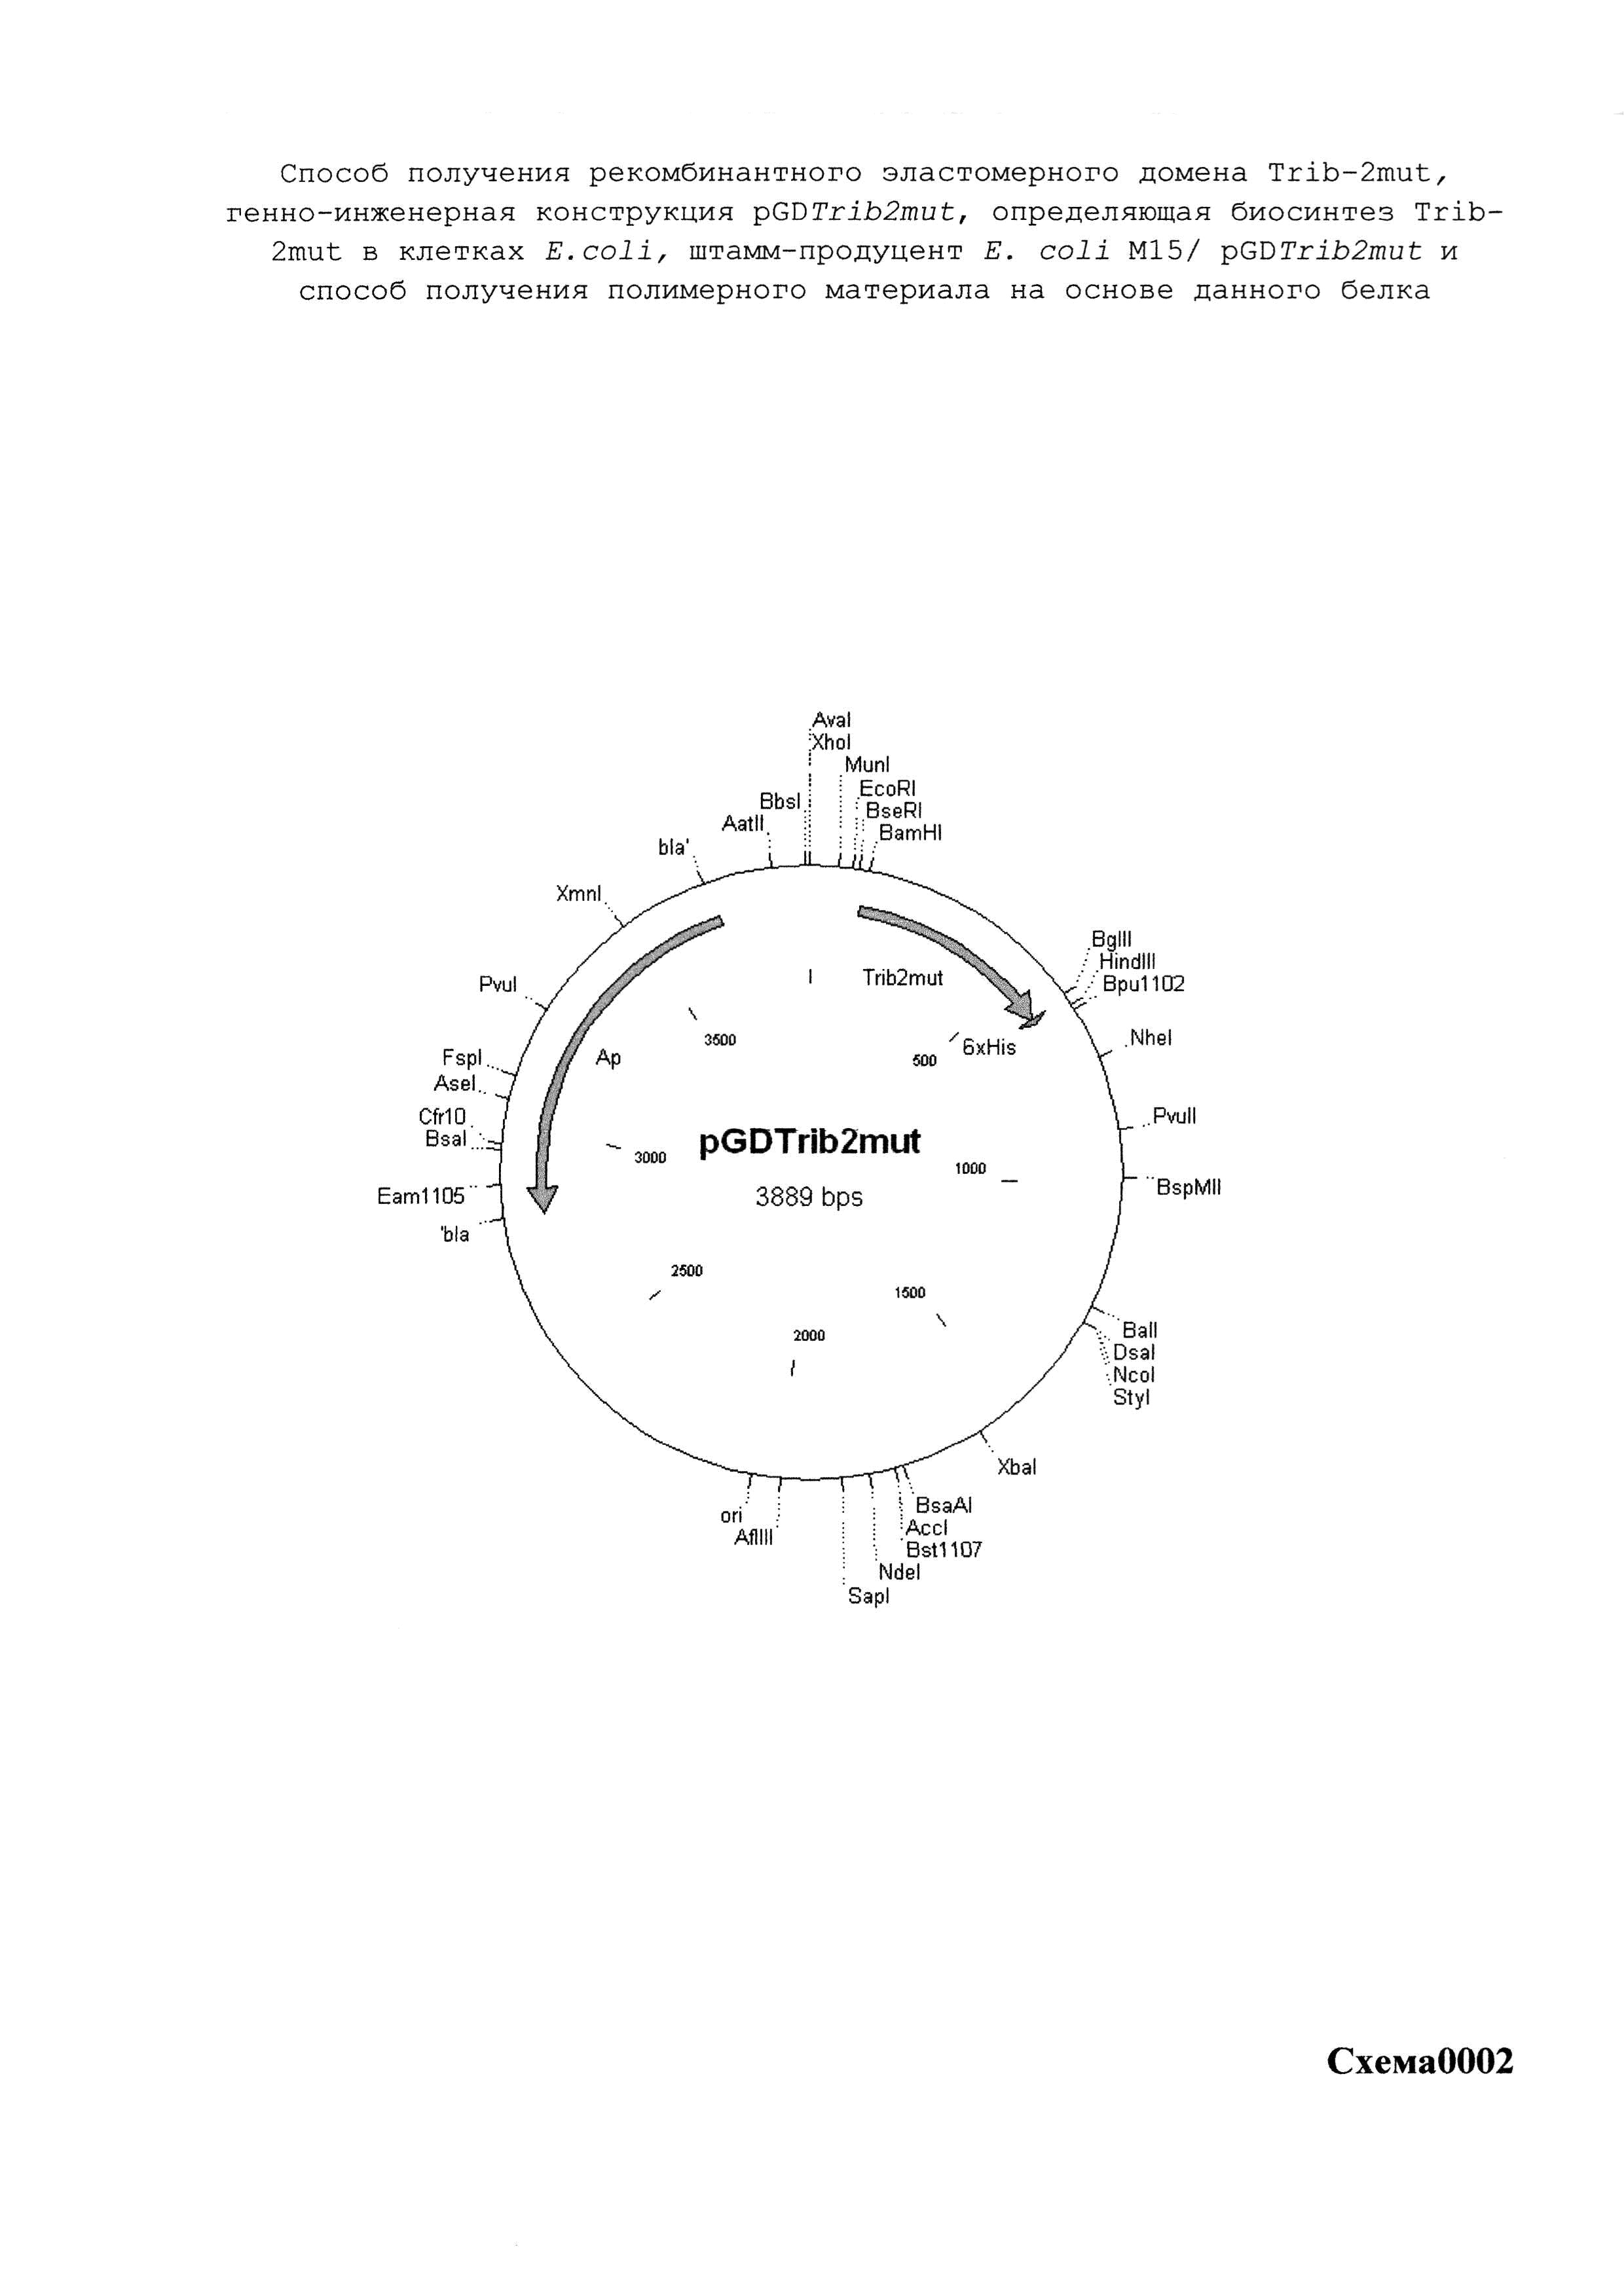 Способ получения рекомбинантного эластомерного домена Trib-2mut, генно-инженерная конструкция pGDTrib2mut, определяющая биосинтез Trib-2mut в клетках E.coli, штамм-продуцент E.coli M15/pGDTrib2mut и способ получения полимерного материала на основе данного белка